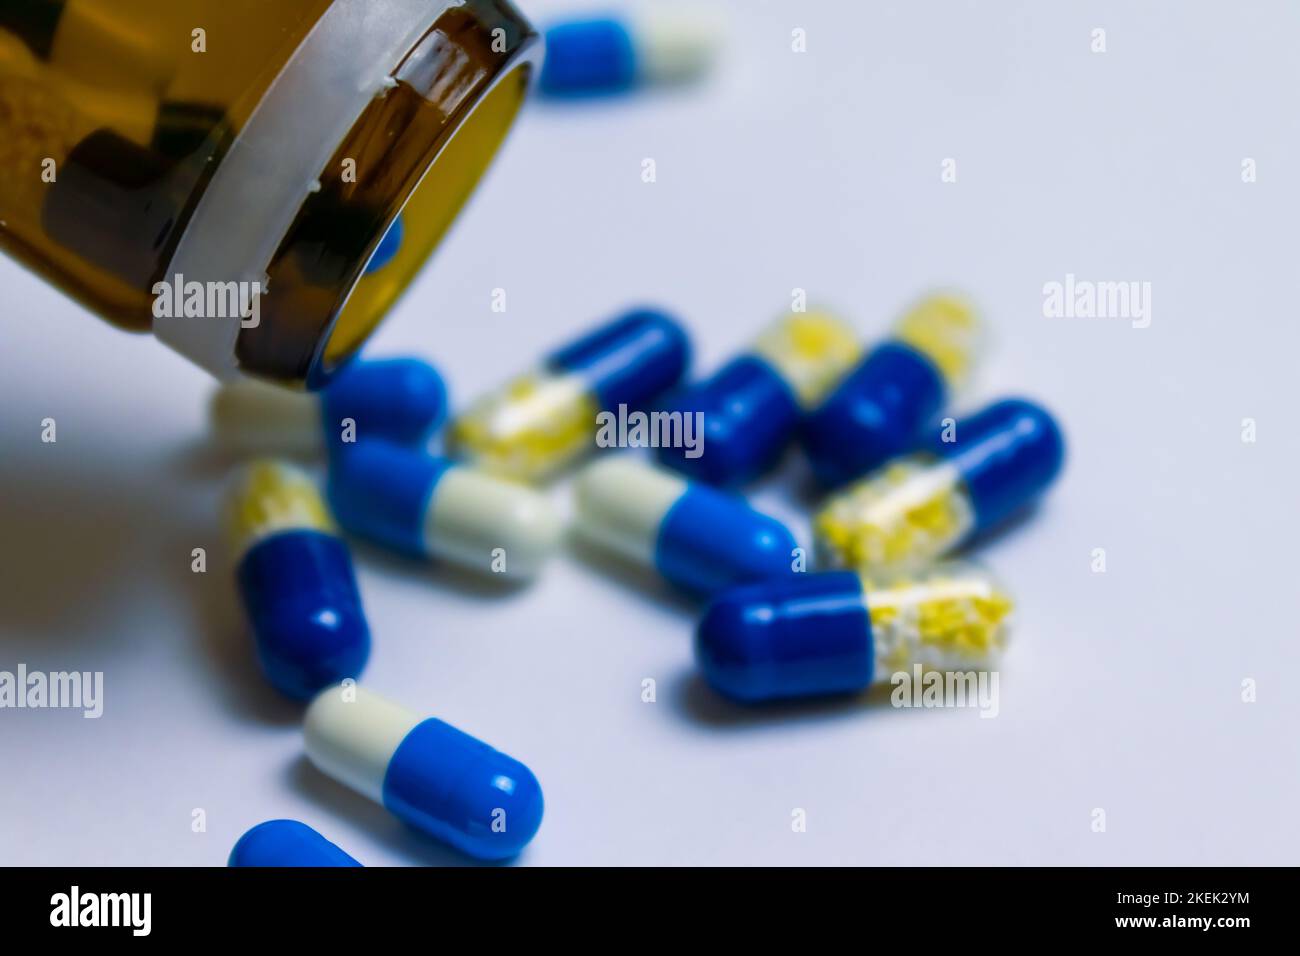 Ein Medizinglas mit verschütteten Pillen, die auf einer weißen Oberfläche liegen - Konzept von Apotheken und Gesundheit Stockfoto